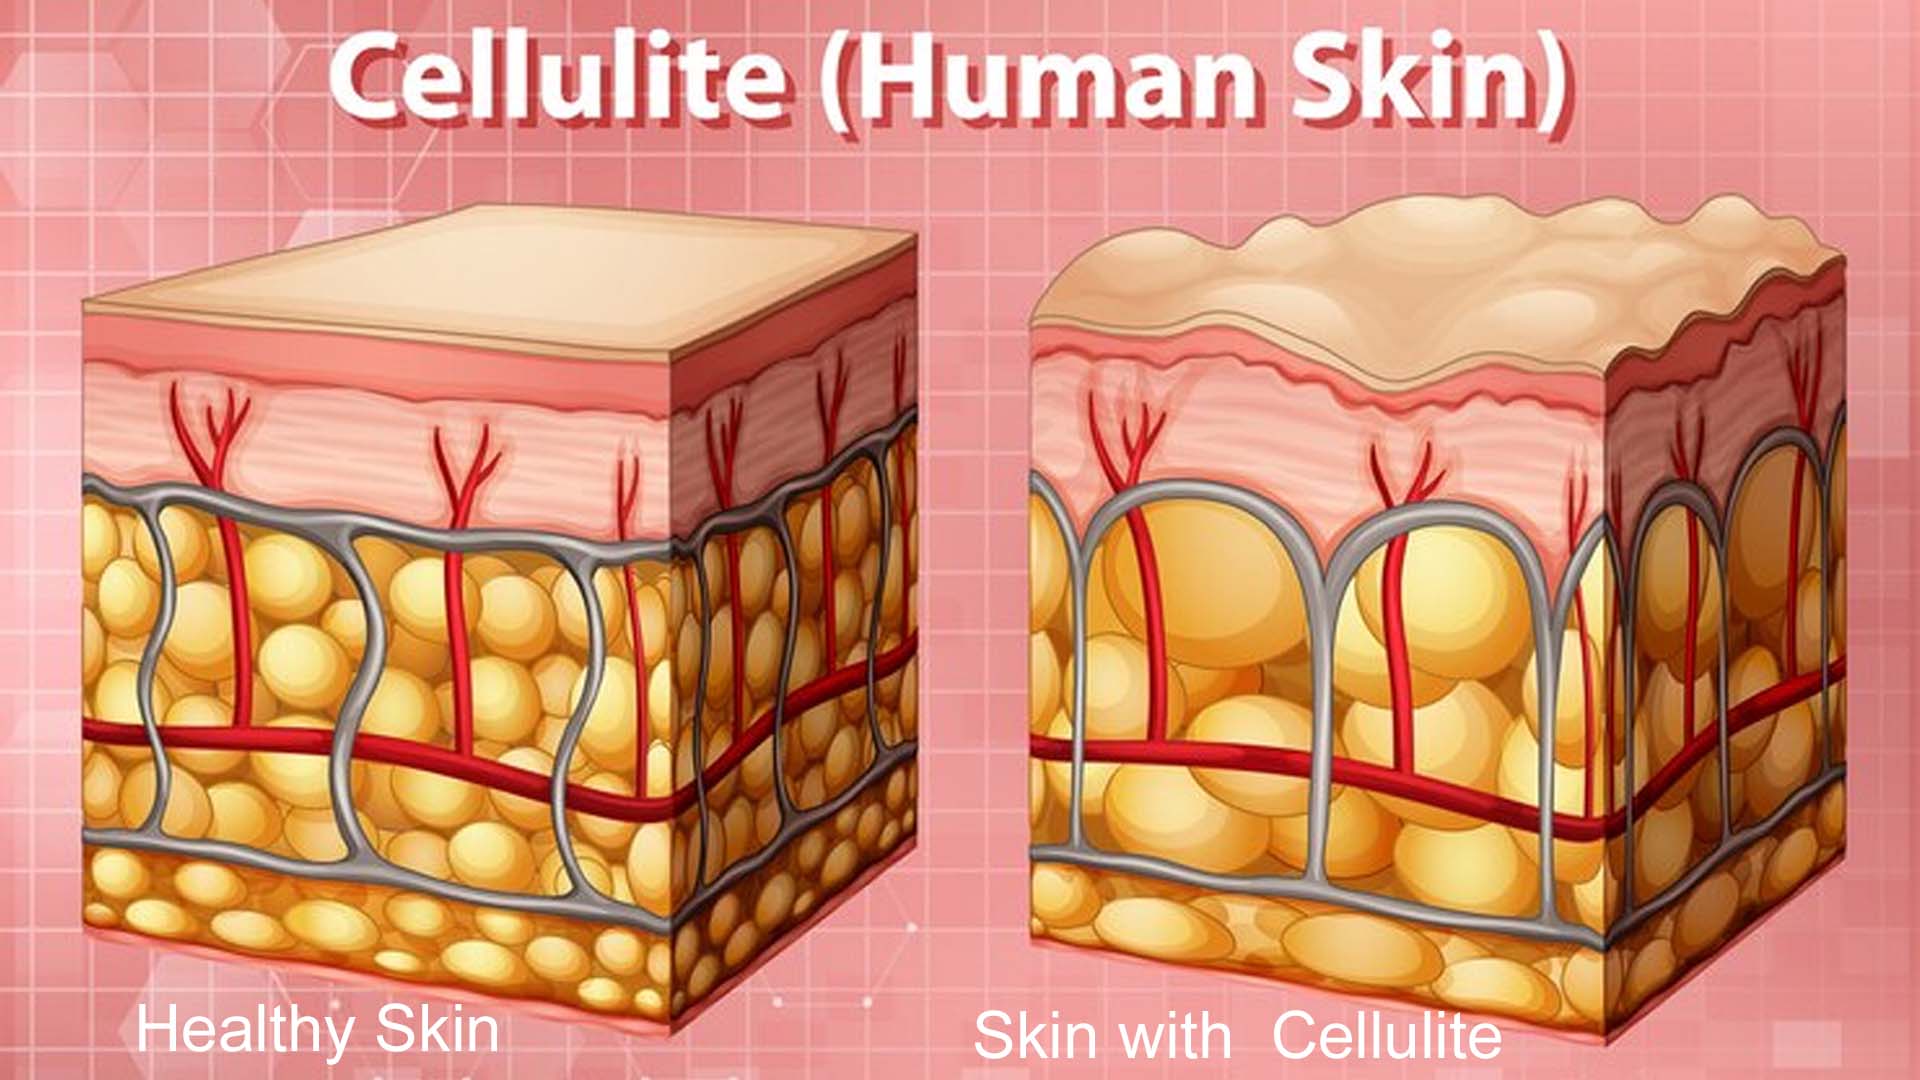 Cellulitis